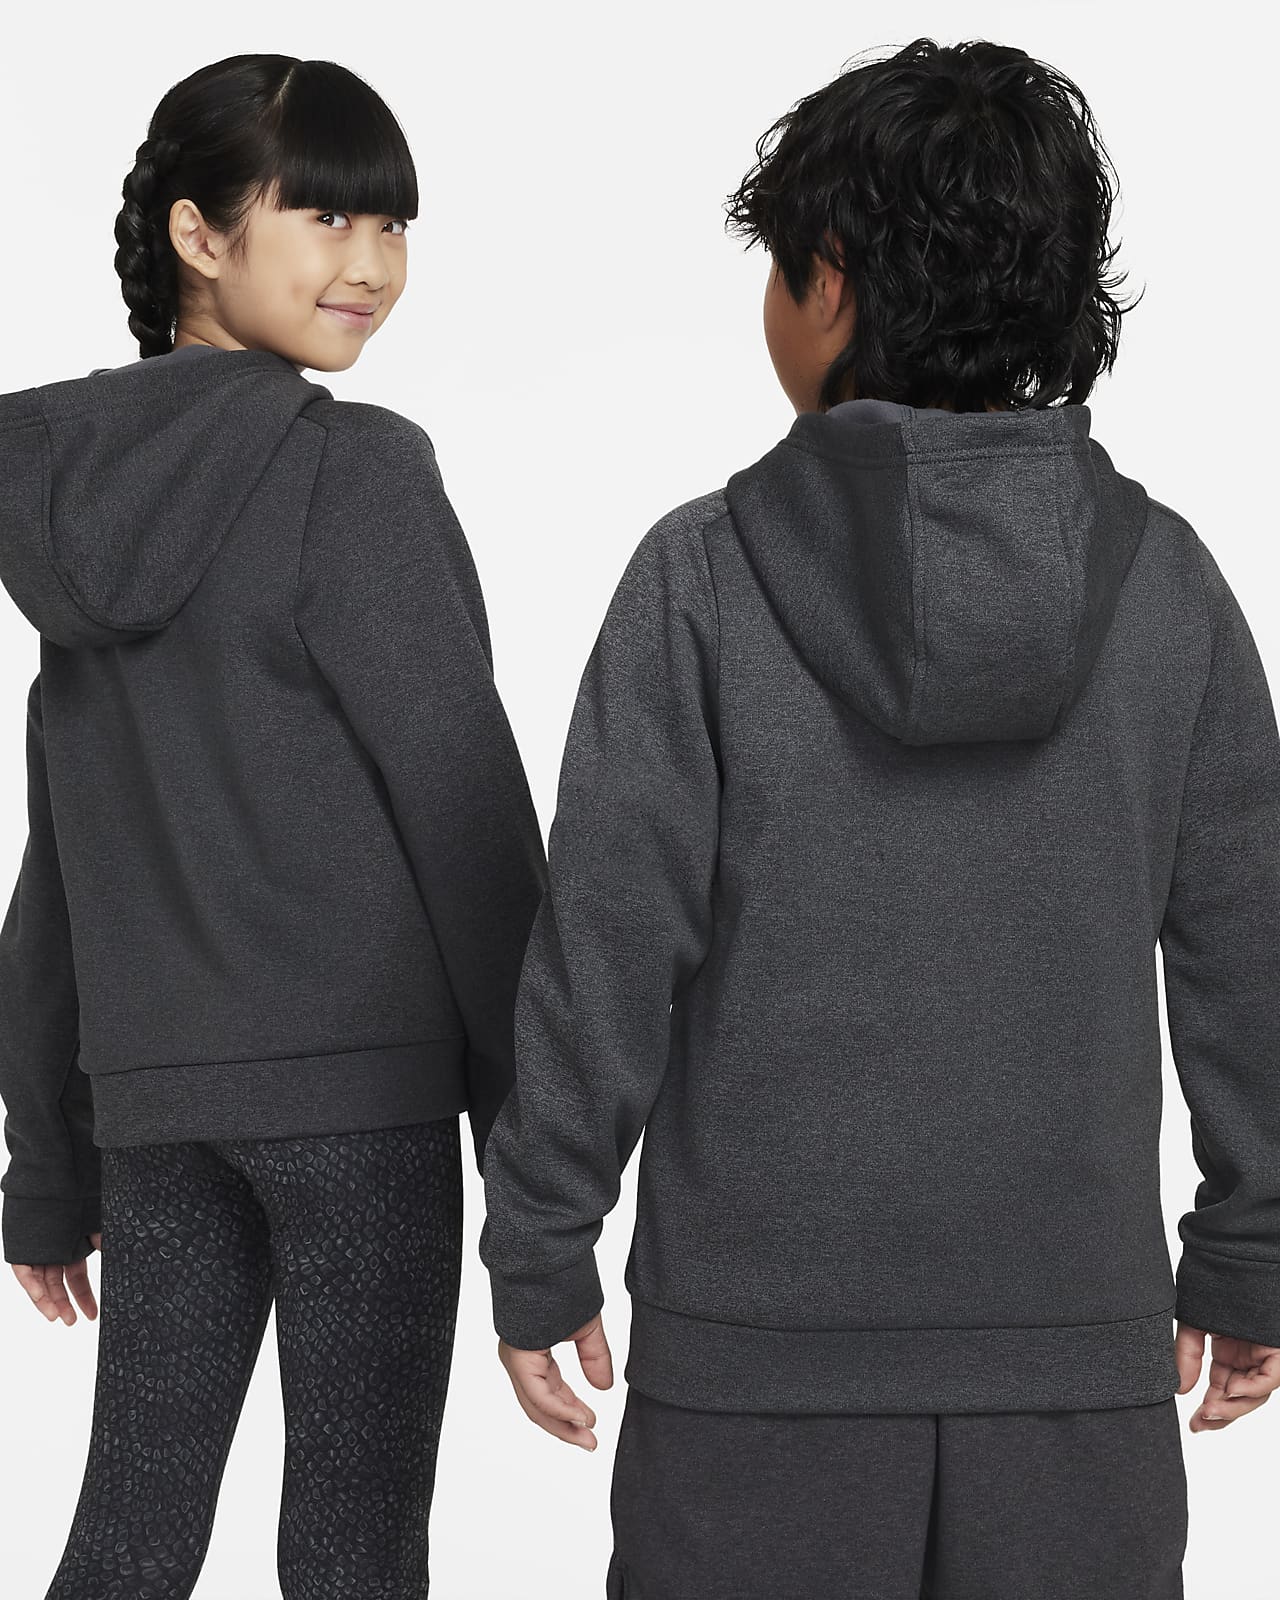 Grey Hoodie Sweatsuit With Black Logo - Kool Kid By Dream Big